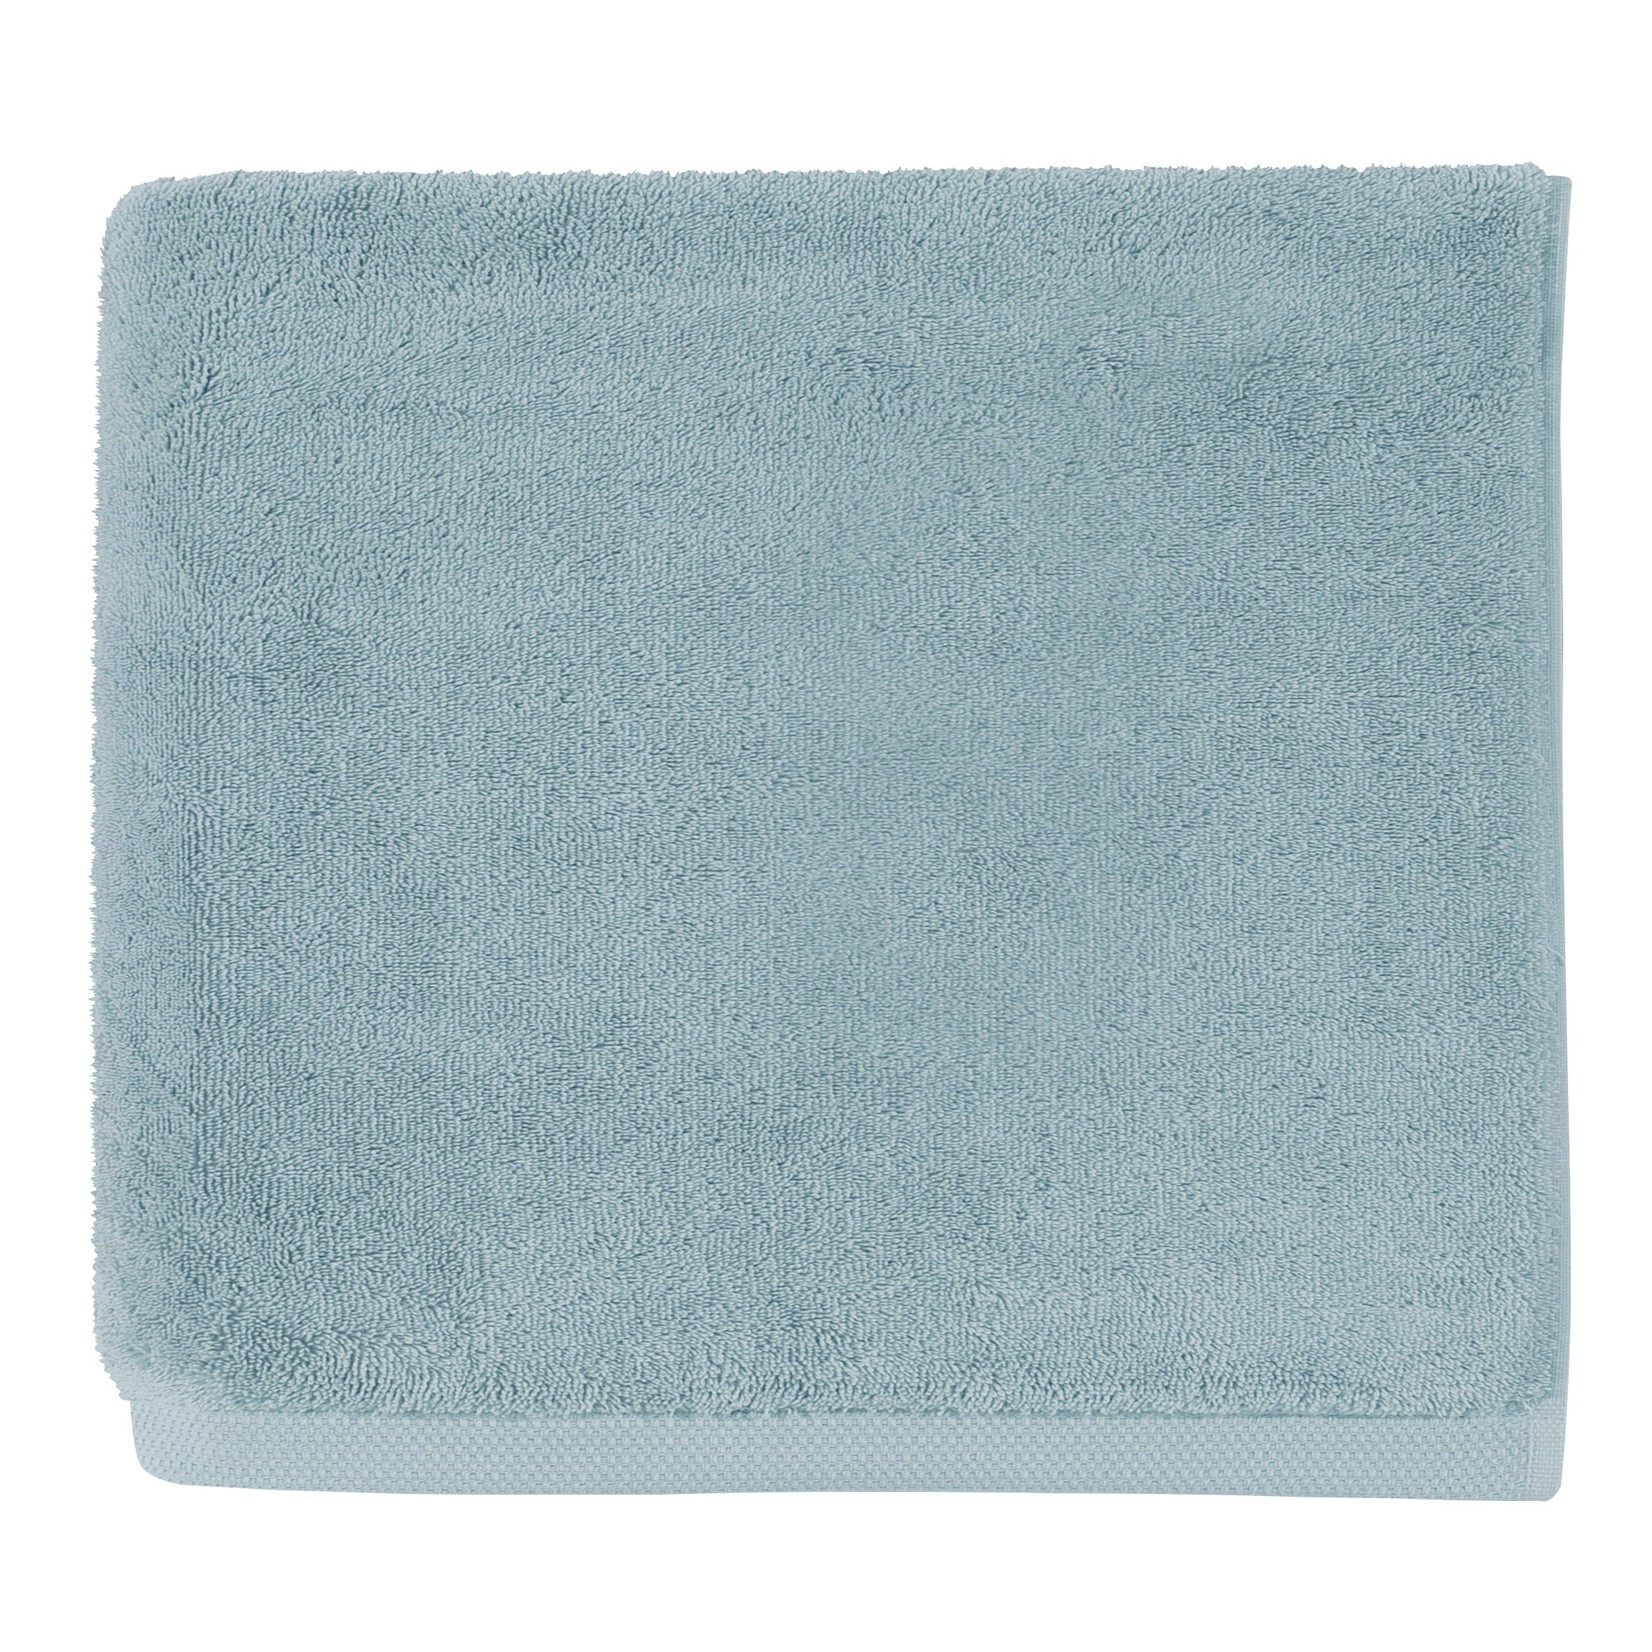 Essentiel - Iceland Bath Towel